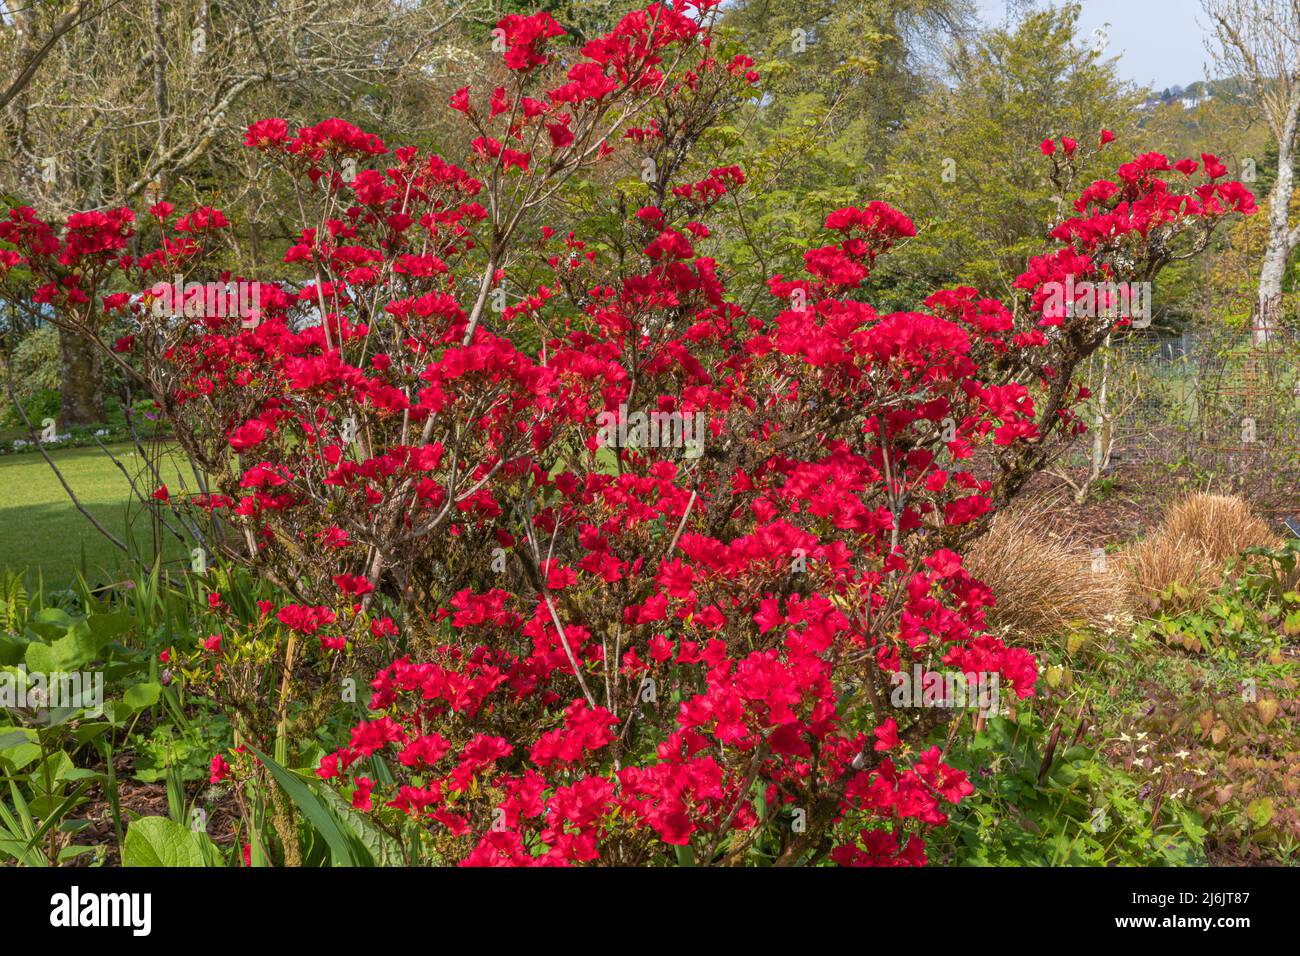 las flores rojas de sangre rica del rododendron se frotan hacia el rubí, con los colores de las flores acentuados contra las hojas verdes Foto de stock